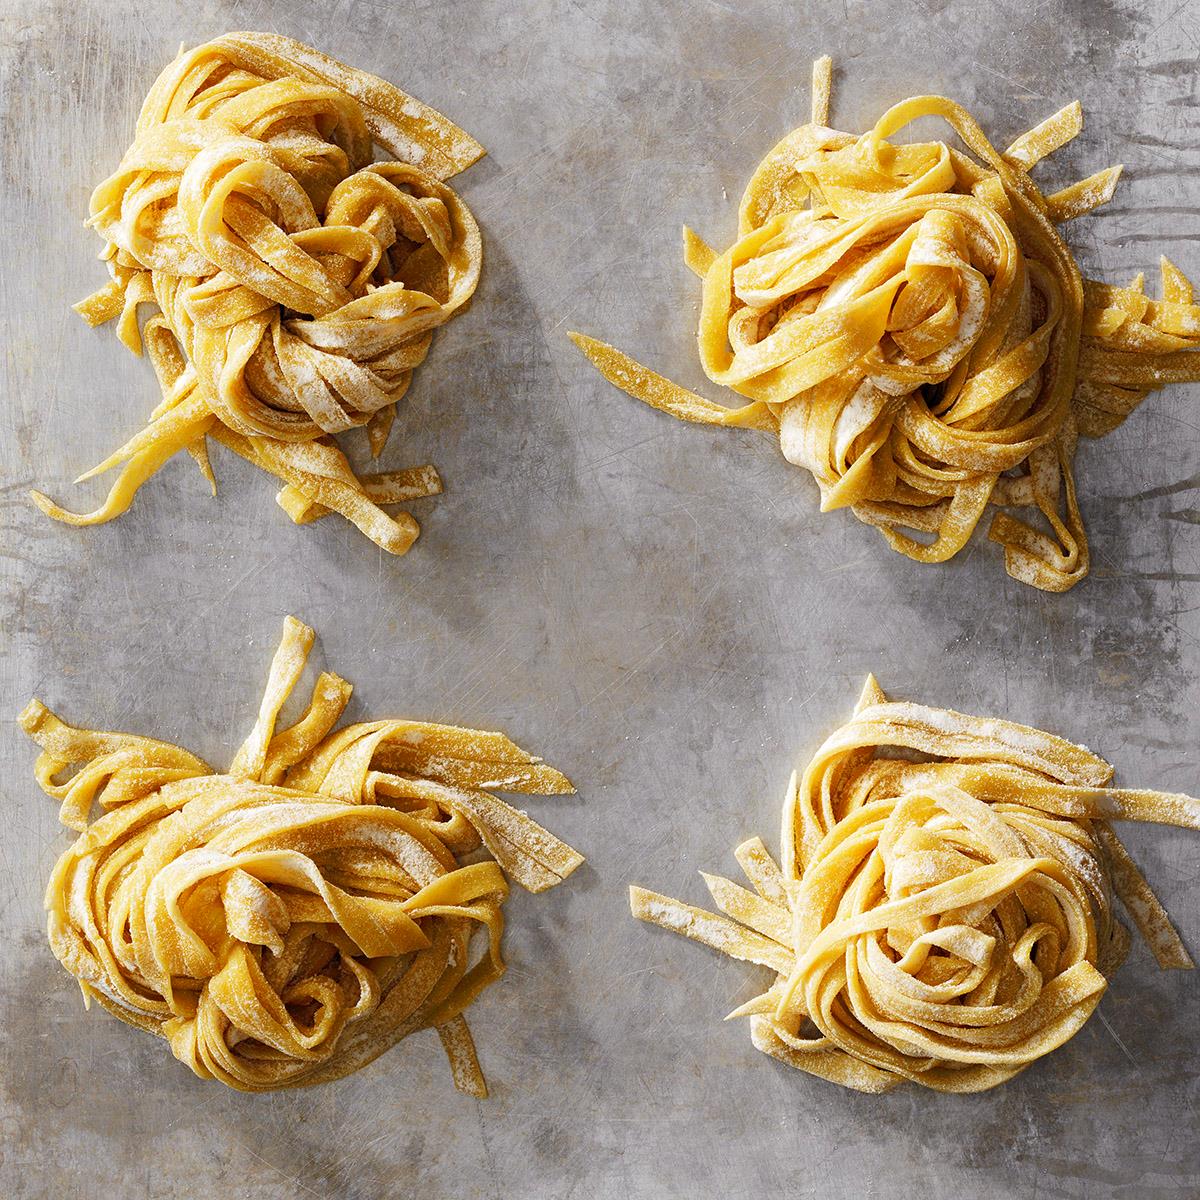 Homemade Pasta Dough Recipe: How to Make It